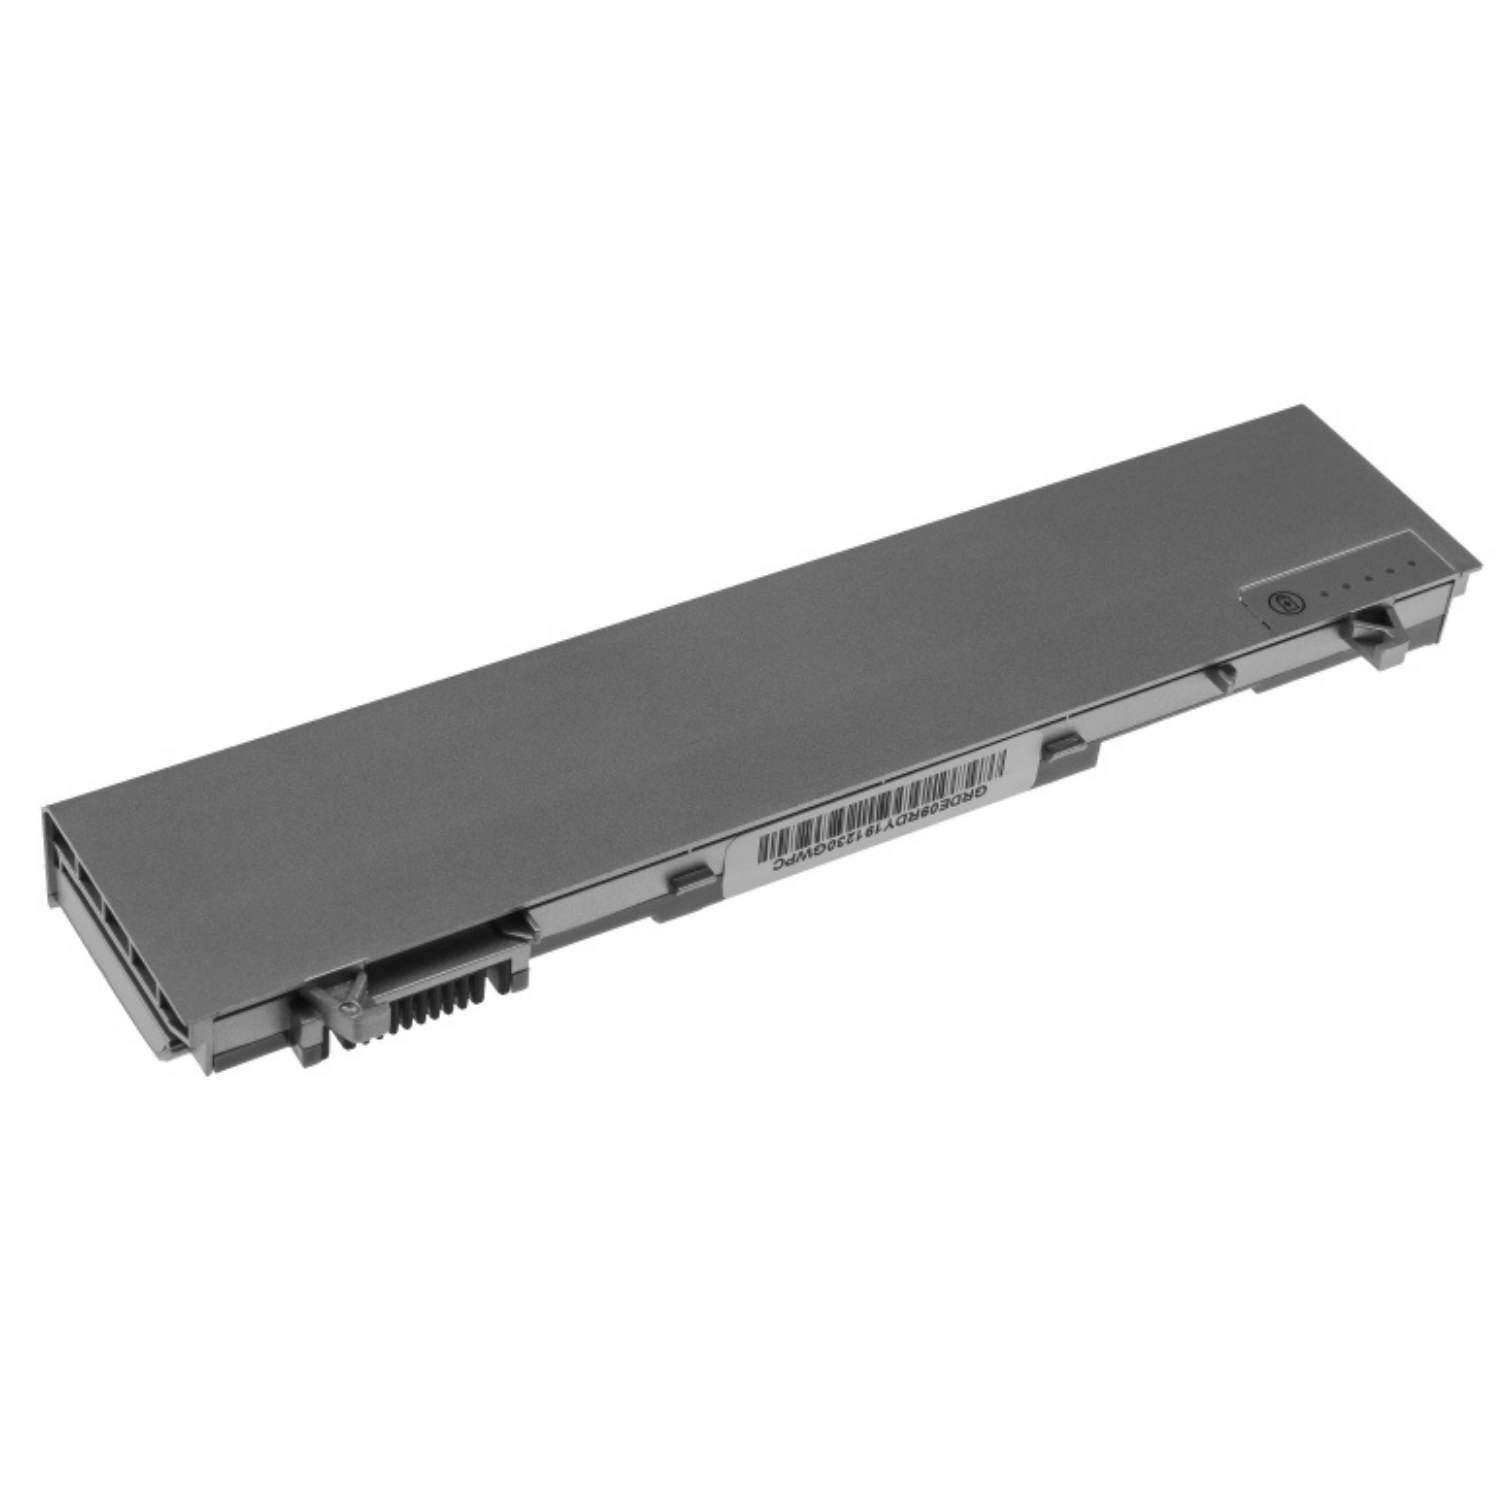 Dell E6400 battery for Latitude E6410 E6500 E6510 Precision M2400 M4400 M4500 Notebook, PN 312-0748 312-0749 312-0753 FU441 FU444 MP494 PT436 R822G WG351 XP394 Series Laptop's.